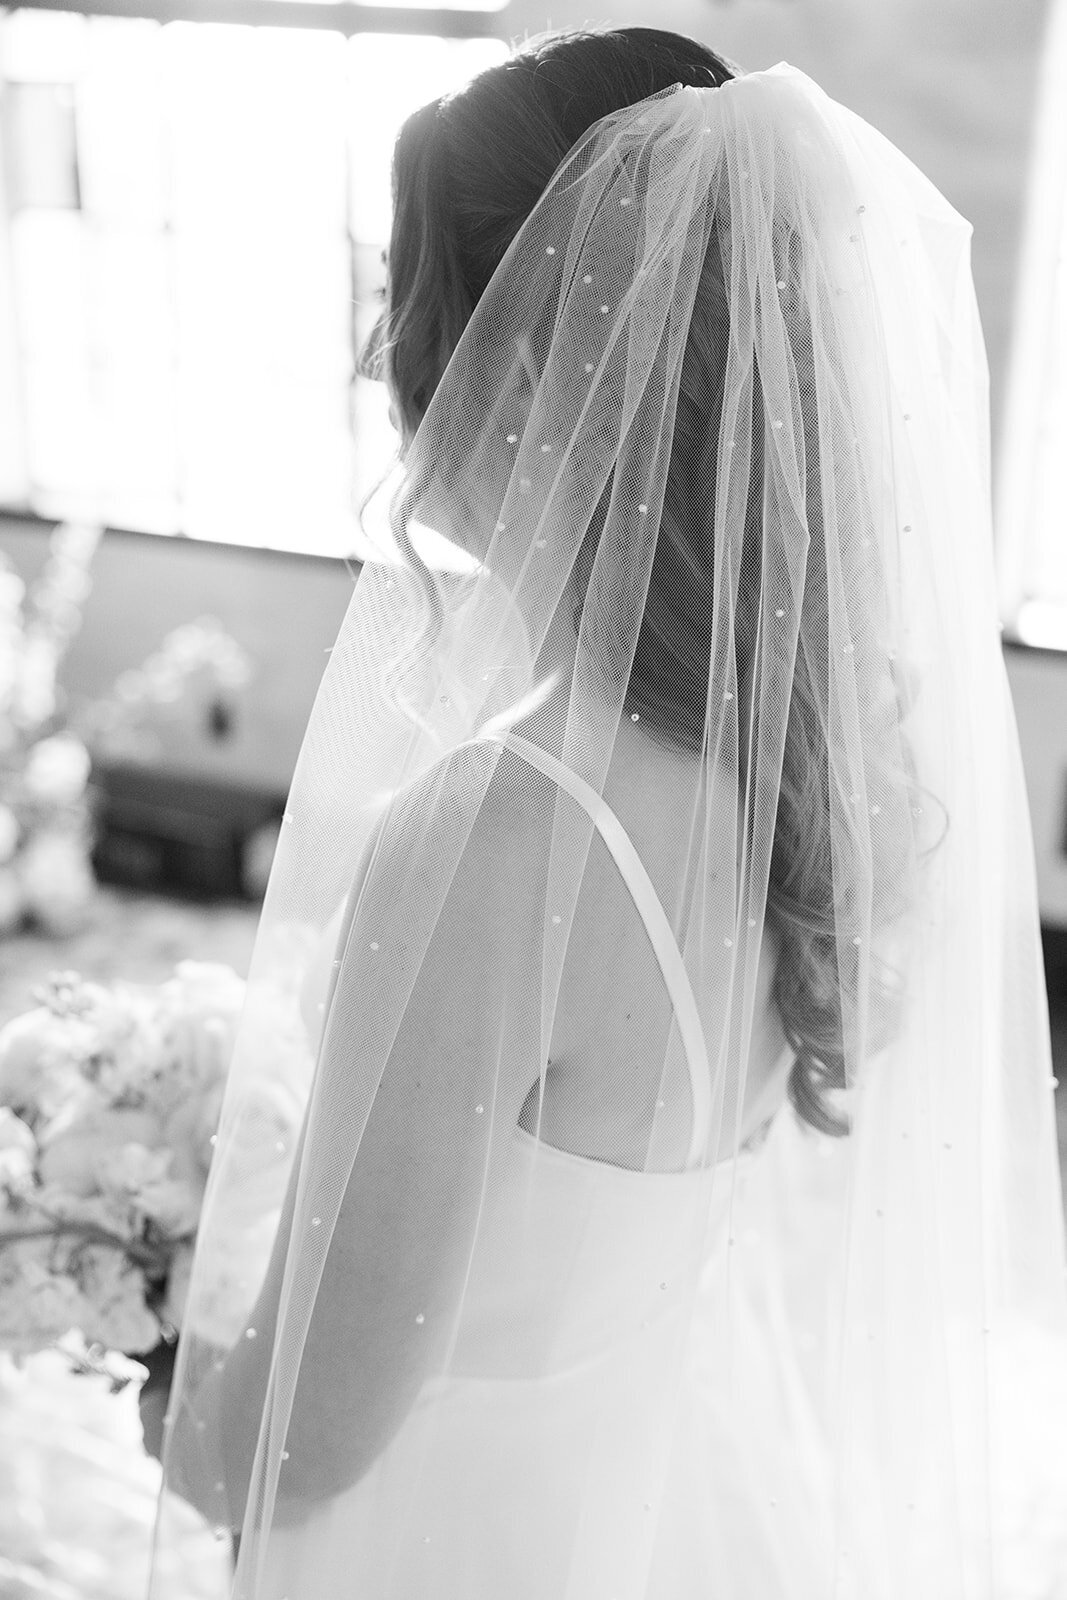 CORNELIA ZAISS PHOTOGRAPHY COURTNEY + ANDREW WEDDING 0192_websize